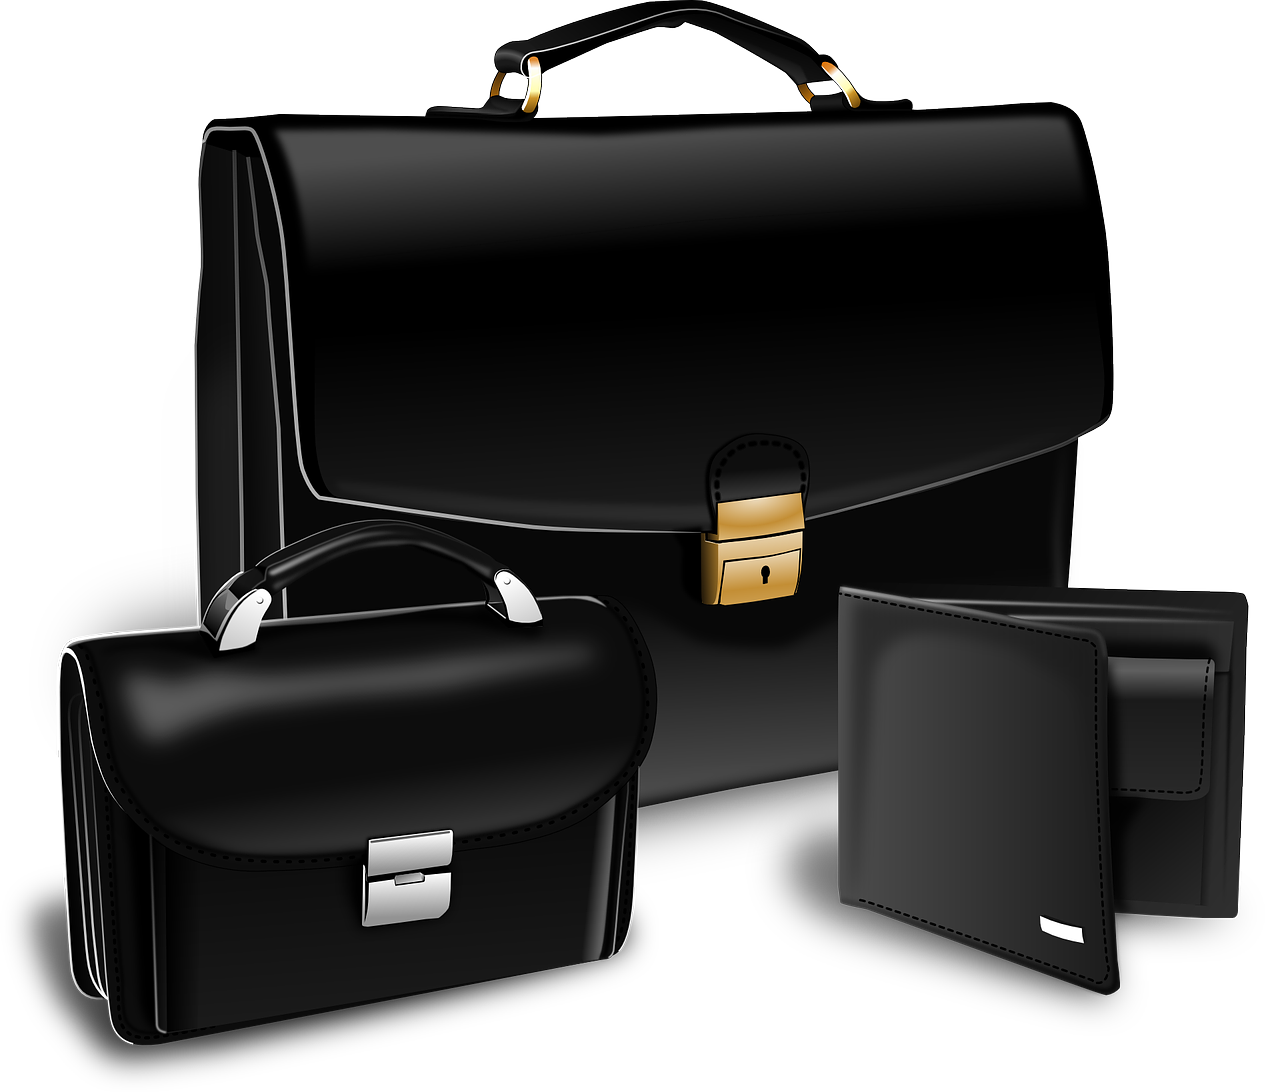 ¡Descubre la maleta ideal para tus viajes!